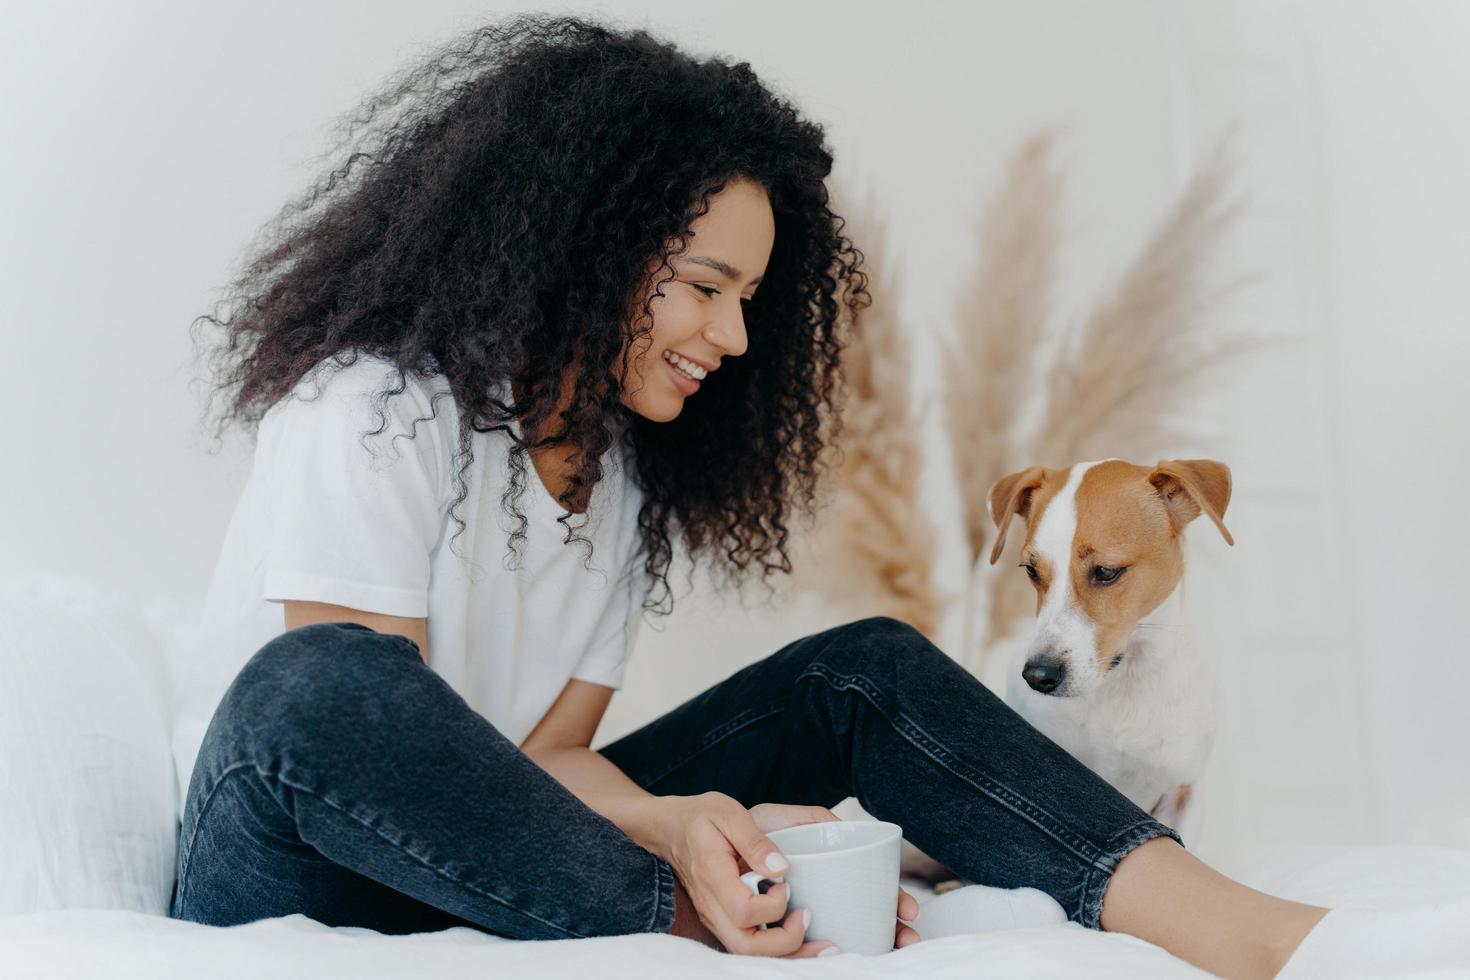 foto av härlig lockig kvinnlig hundägare ser med leende på djur, håller en kopp te, sitter på sängen i vitt rymligt sovrum, uttrycker kärlek till djur. människor, husdjur och vänskapskoncept